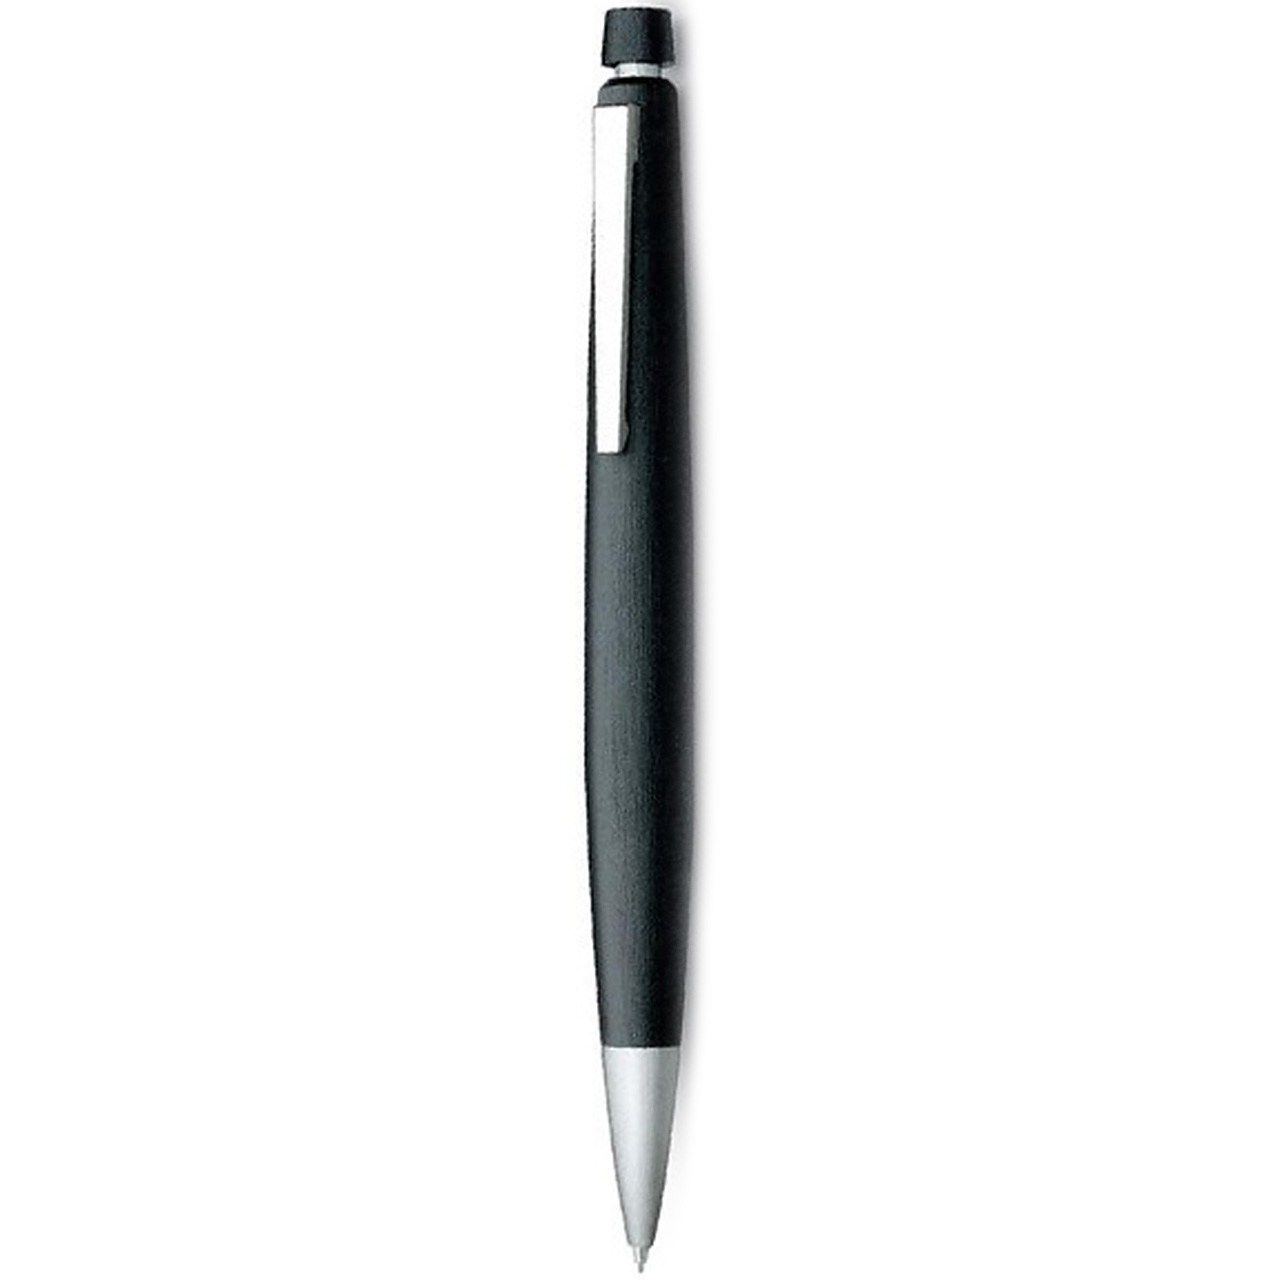 مداد نوکی لامی مدل 2000 - کد 101 با قطر نوشتاری 0.7 میلی متر